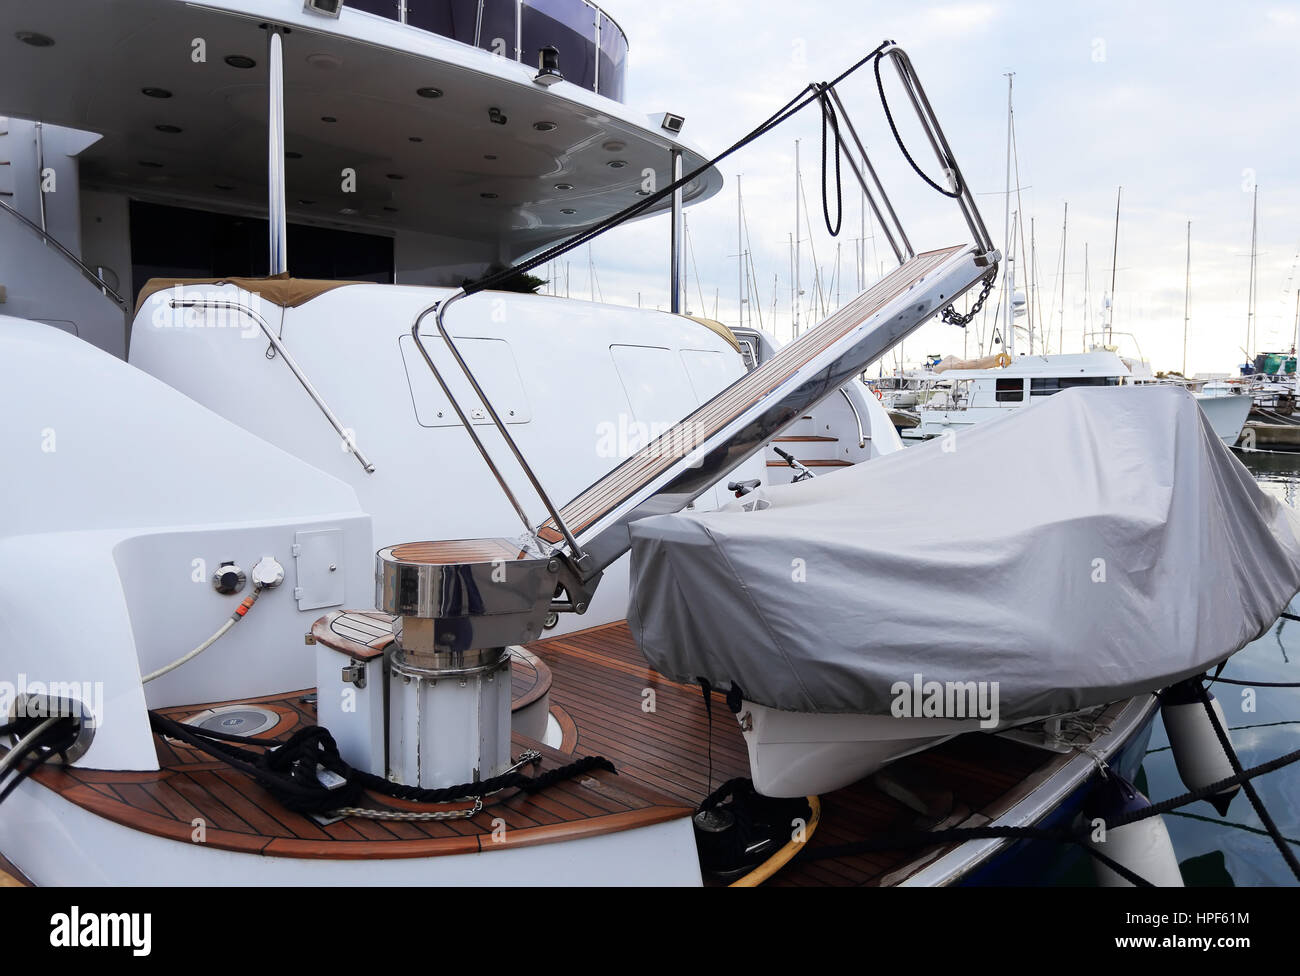 Stern de yacht de luxe blanc avec voile d'urgence Banque D'Images